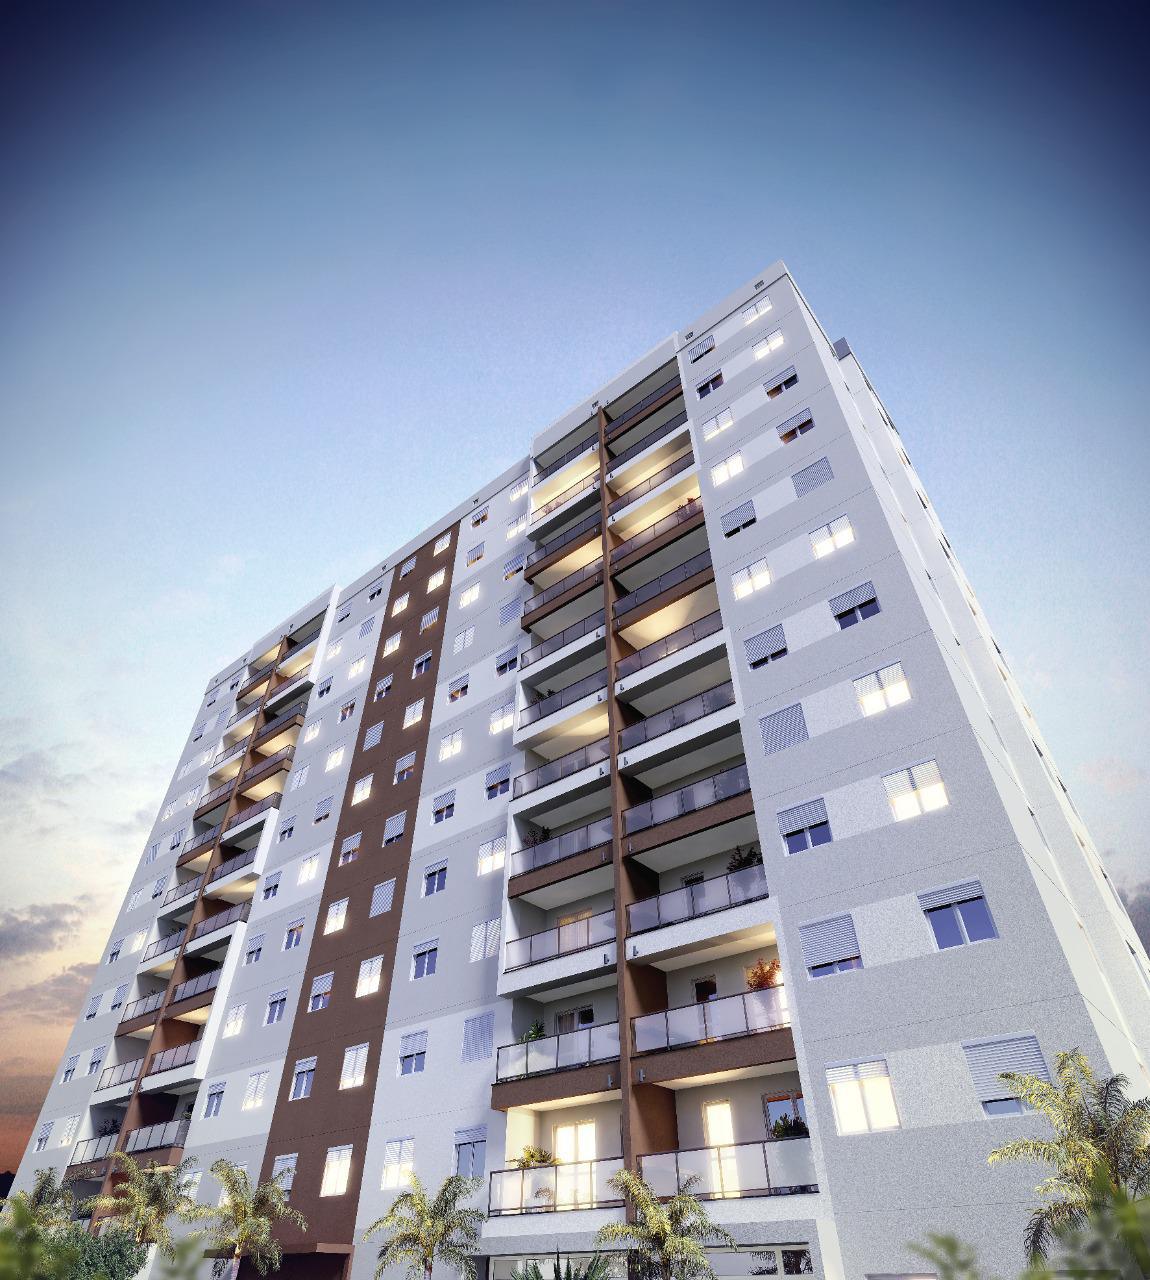  Apartamento de 3 Dormitorios em Itatiba - Investe Imovel